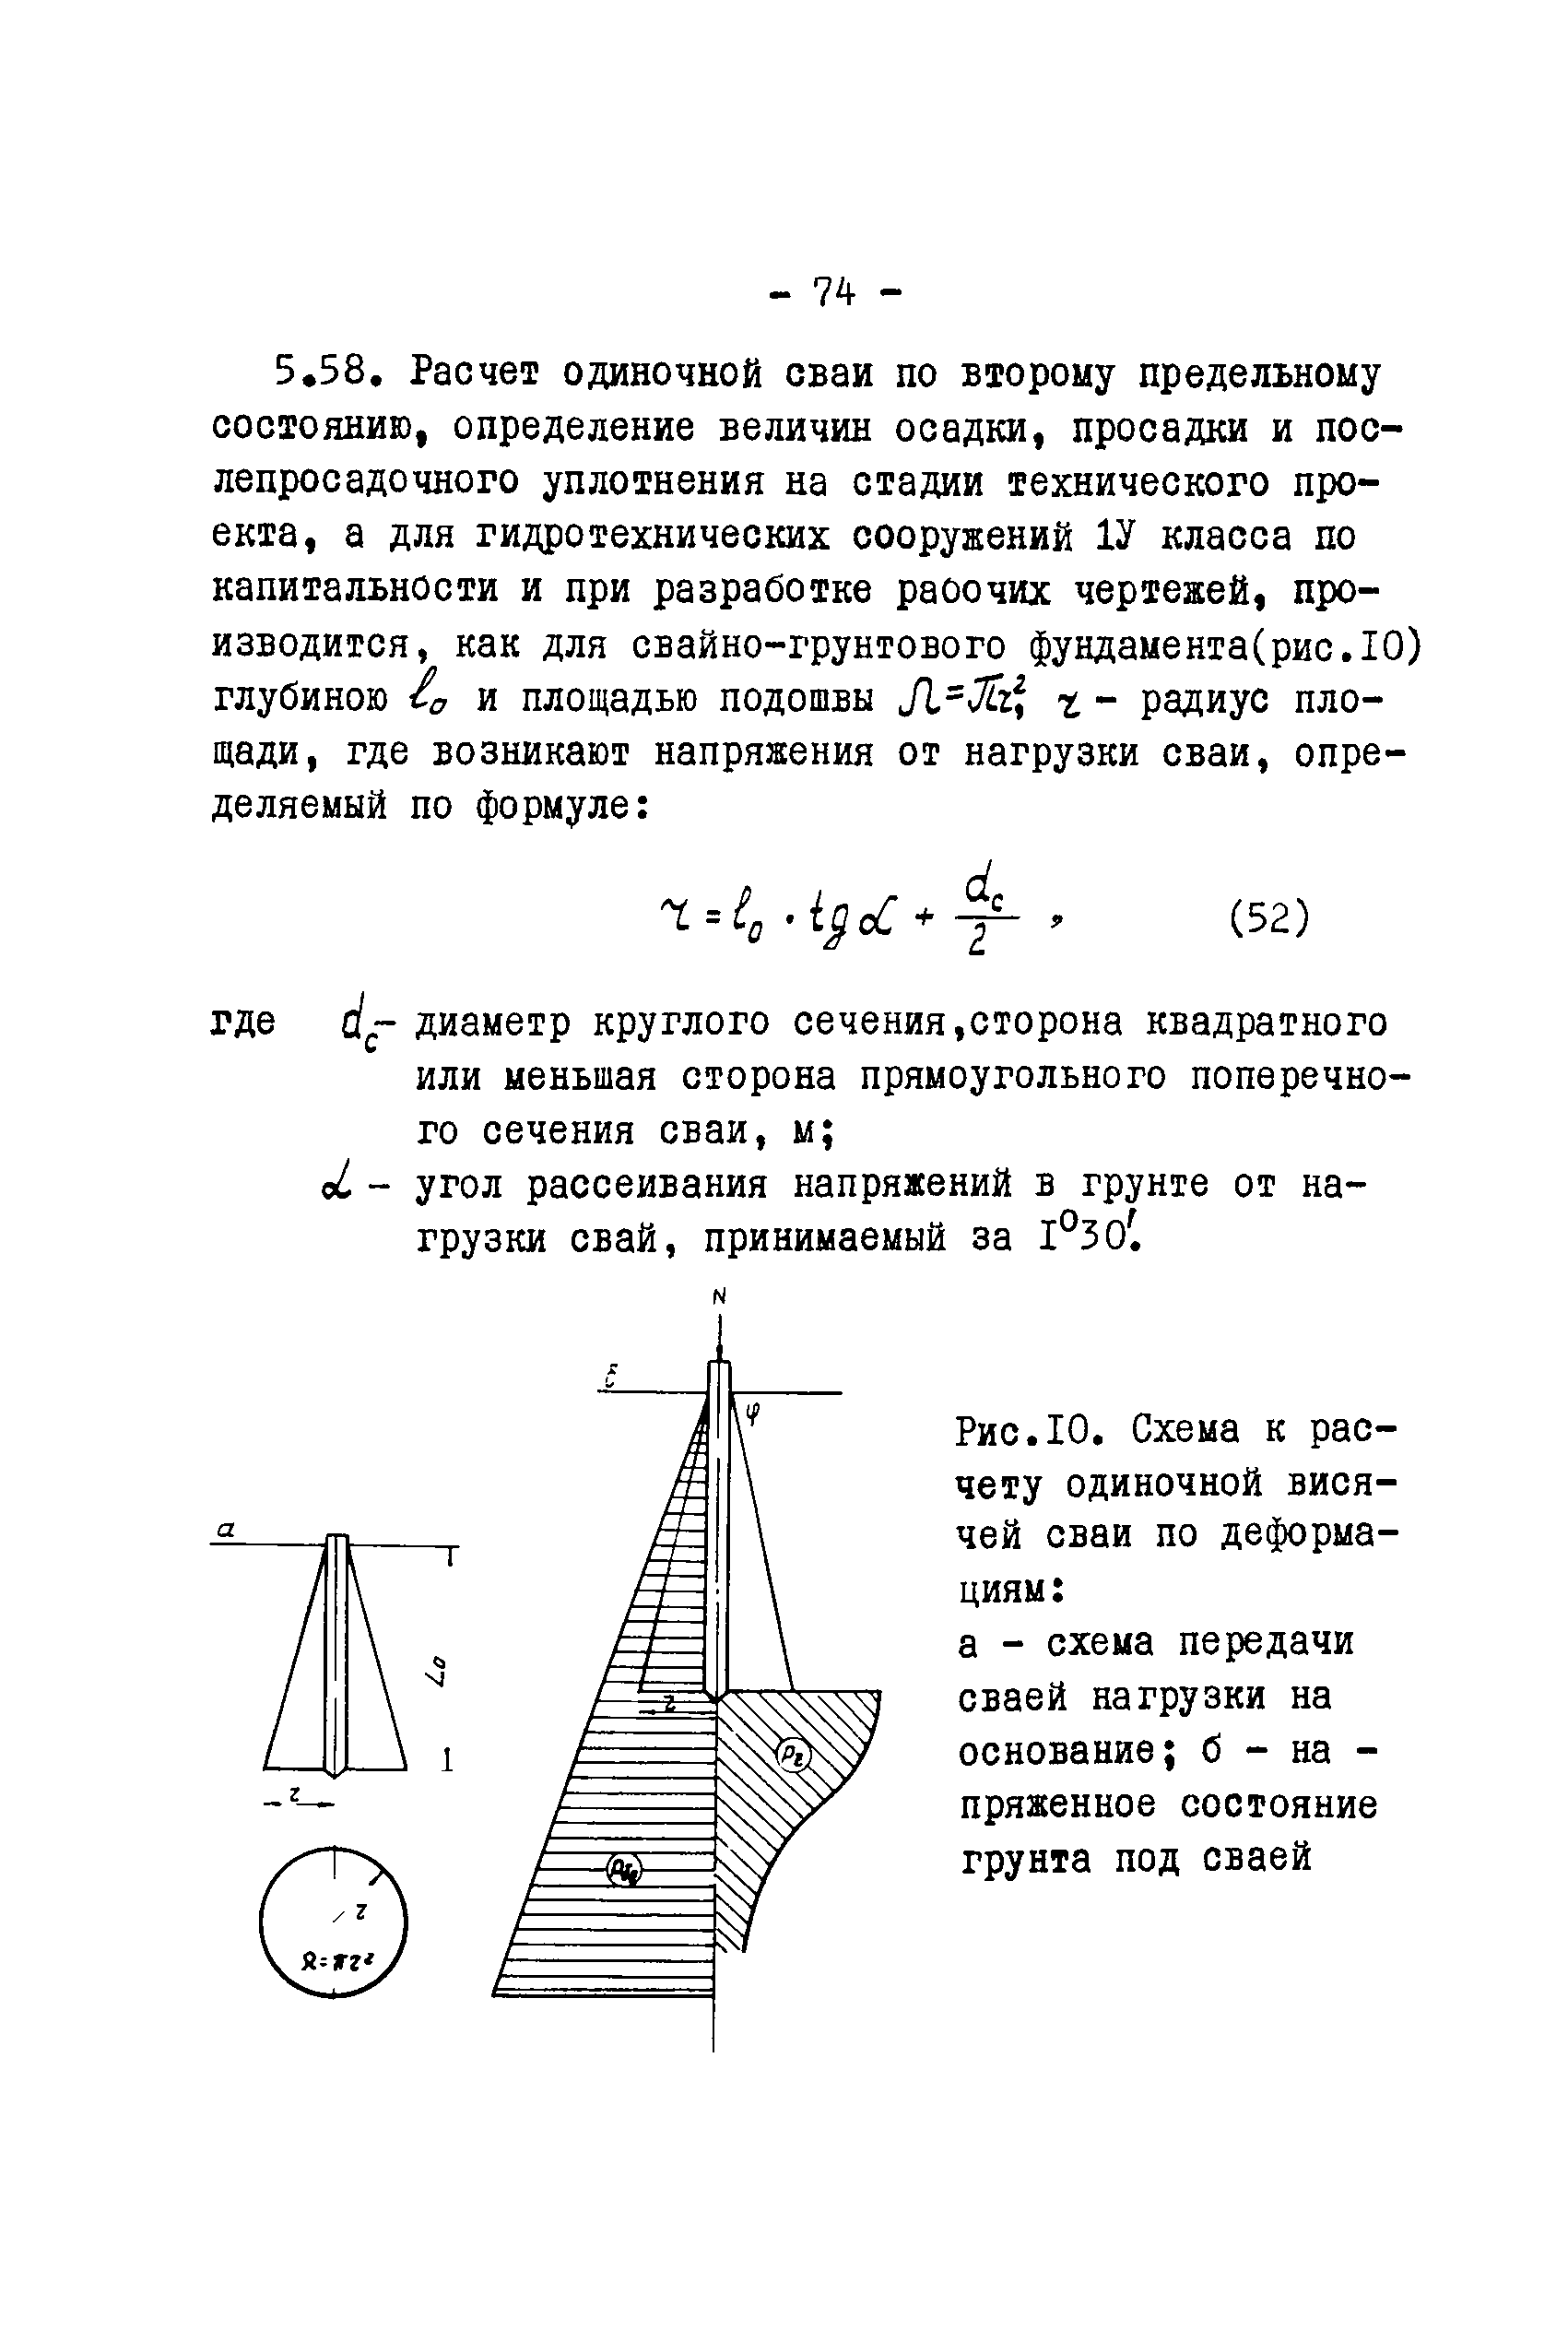 ВСН II-23-75/Минводхоз СССР